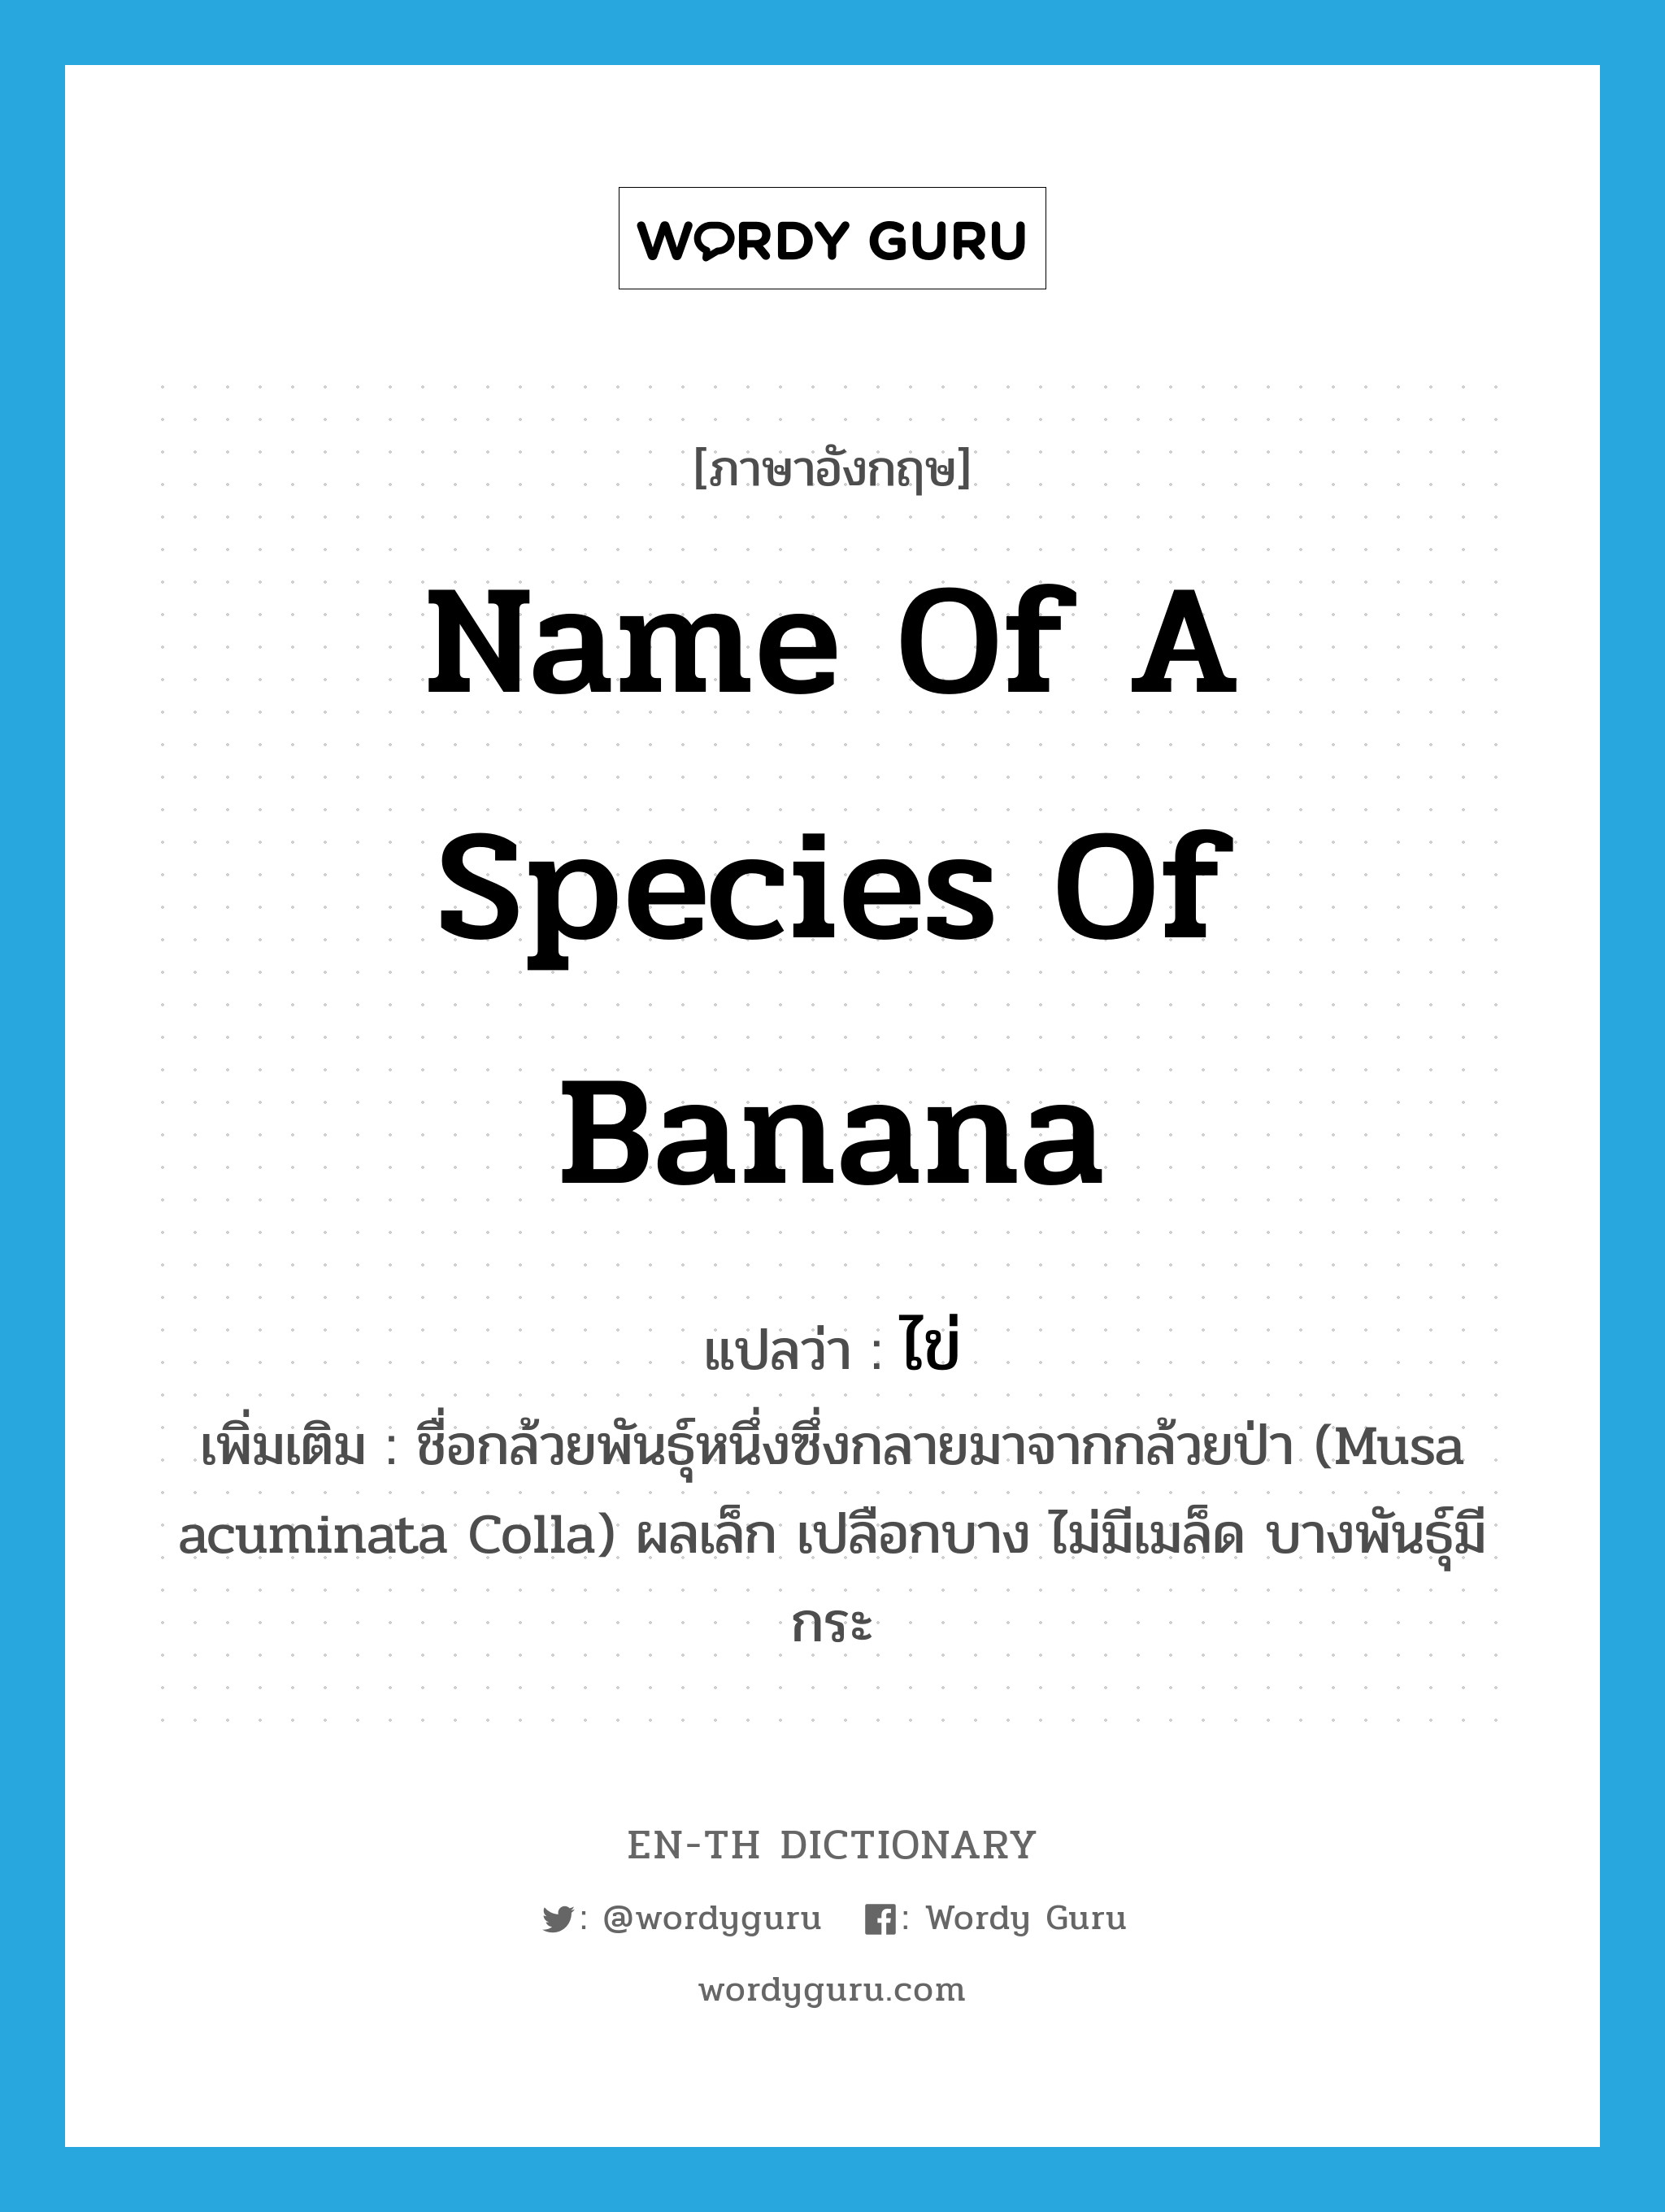 ไข่ ภาษาอังกฤษ?, คำศัพท์ภาษาอังกฤษ ไข่ แปลว่า name of a species of banana ประเภท N เพิ่มเติม ชื่อกล้วยพันธุ์หนึ่งซึ่งกลายมาจากกล้วยป่า (Musa acuminata Colla) ผลเล็ก เปลือกบาง ไม่มีเมล็ด บางพันธุ์มีกระ หมวด N